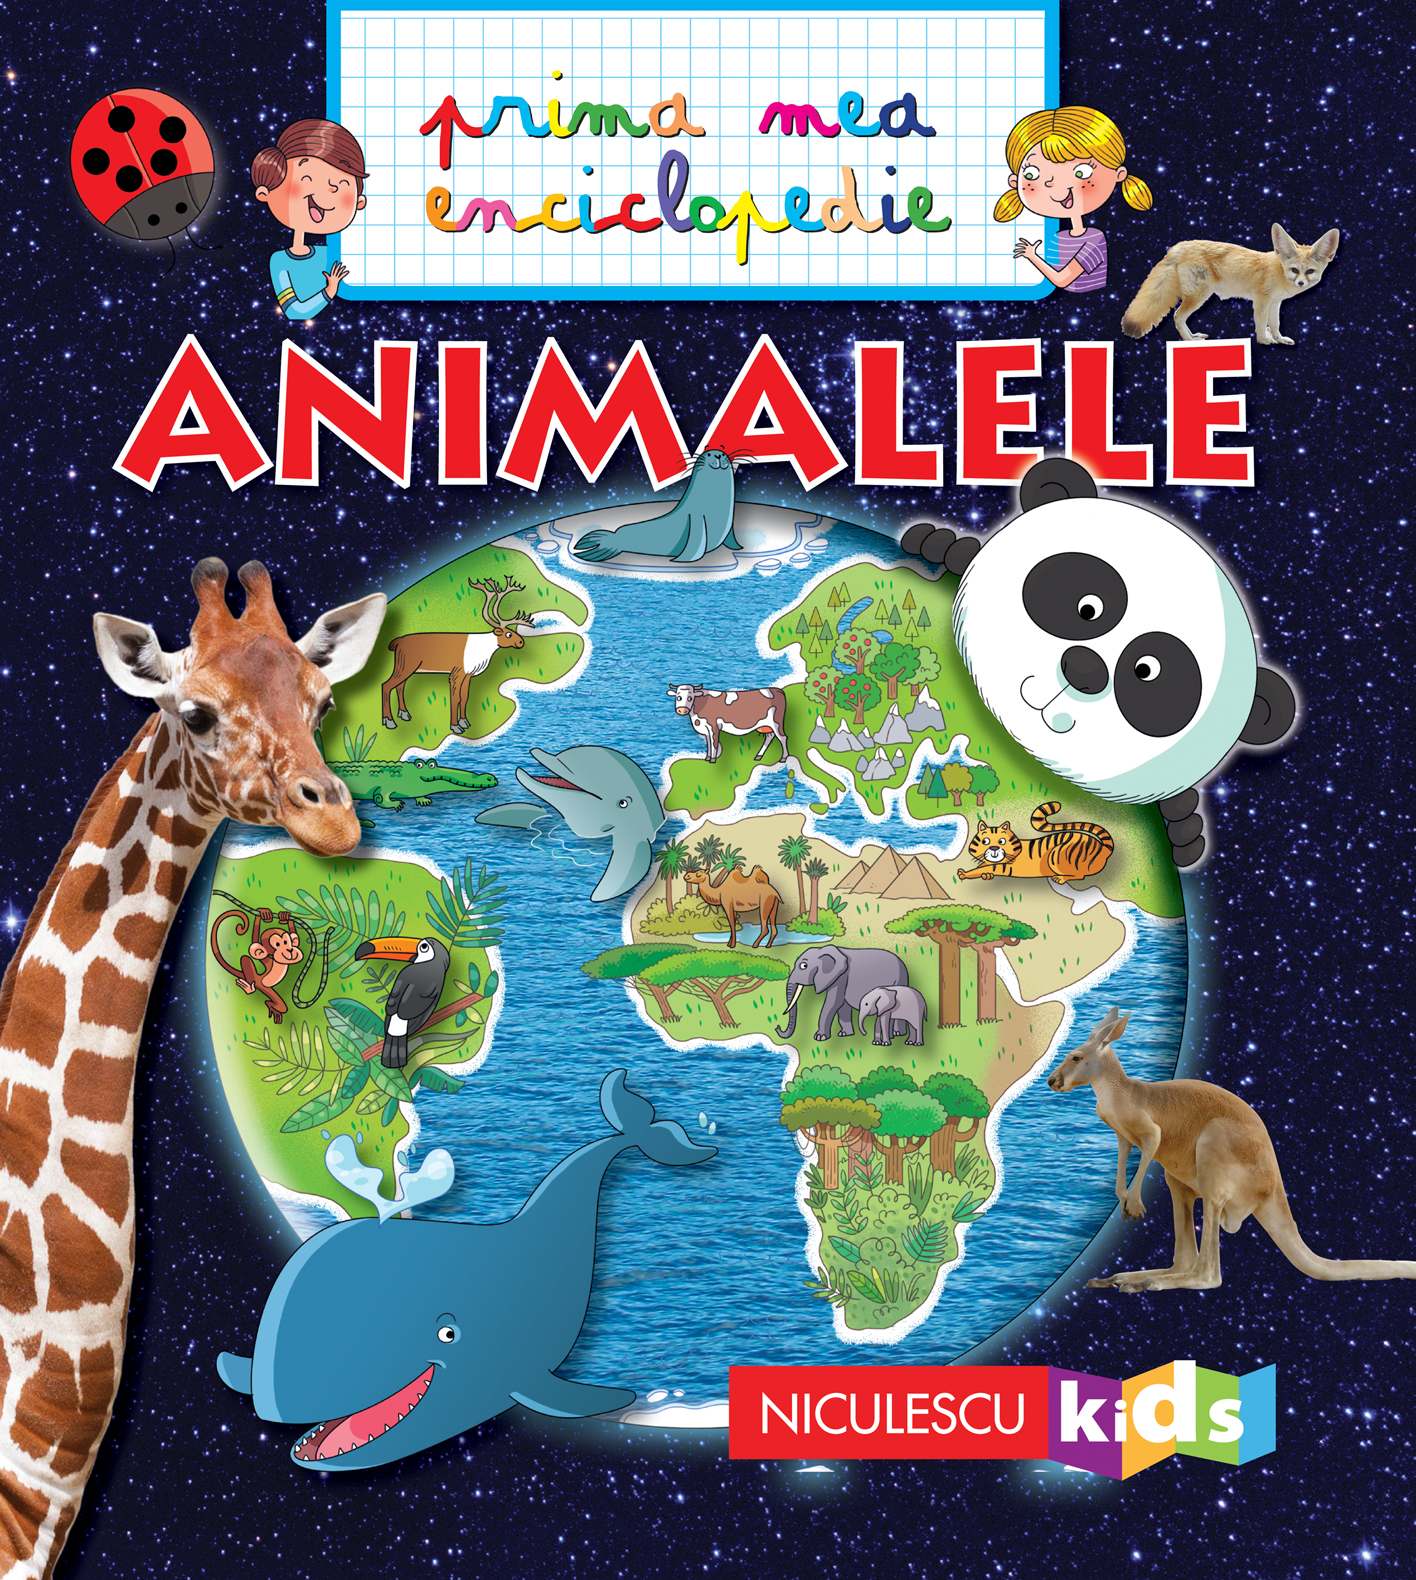 Animalele - Prima mea enciclopedie